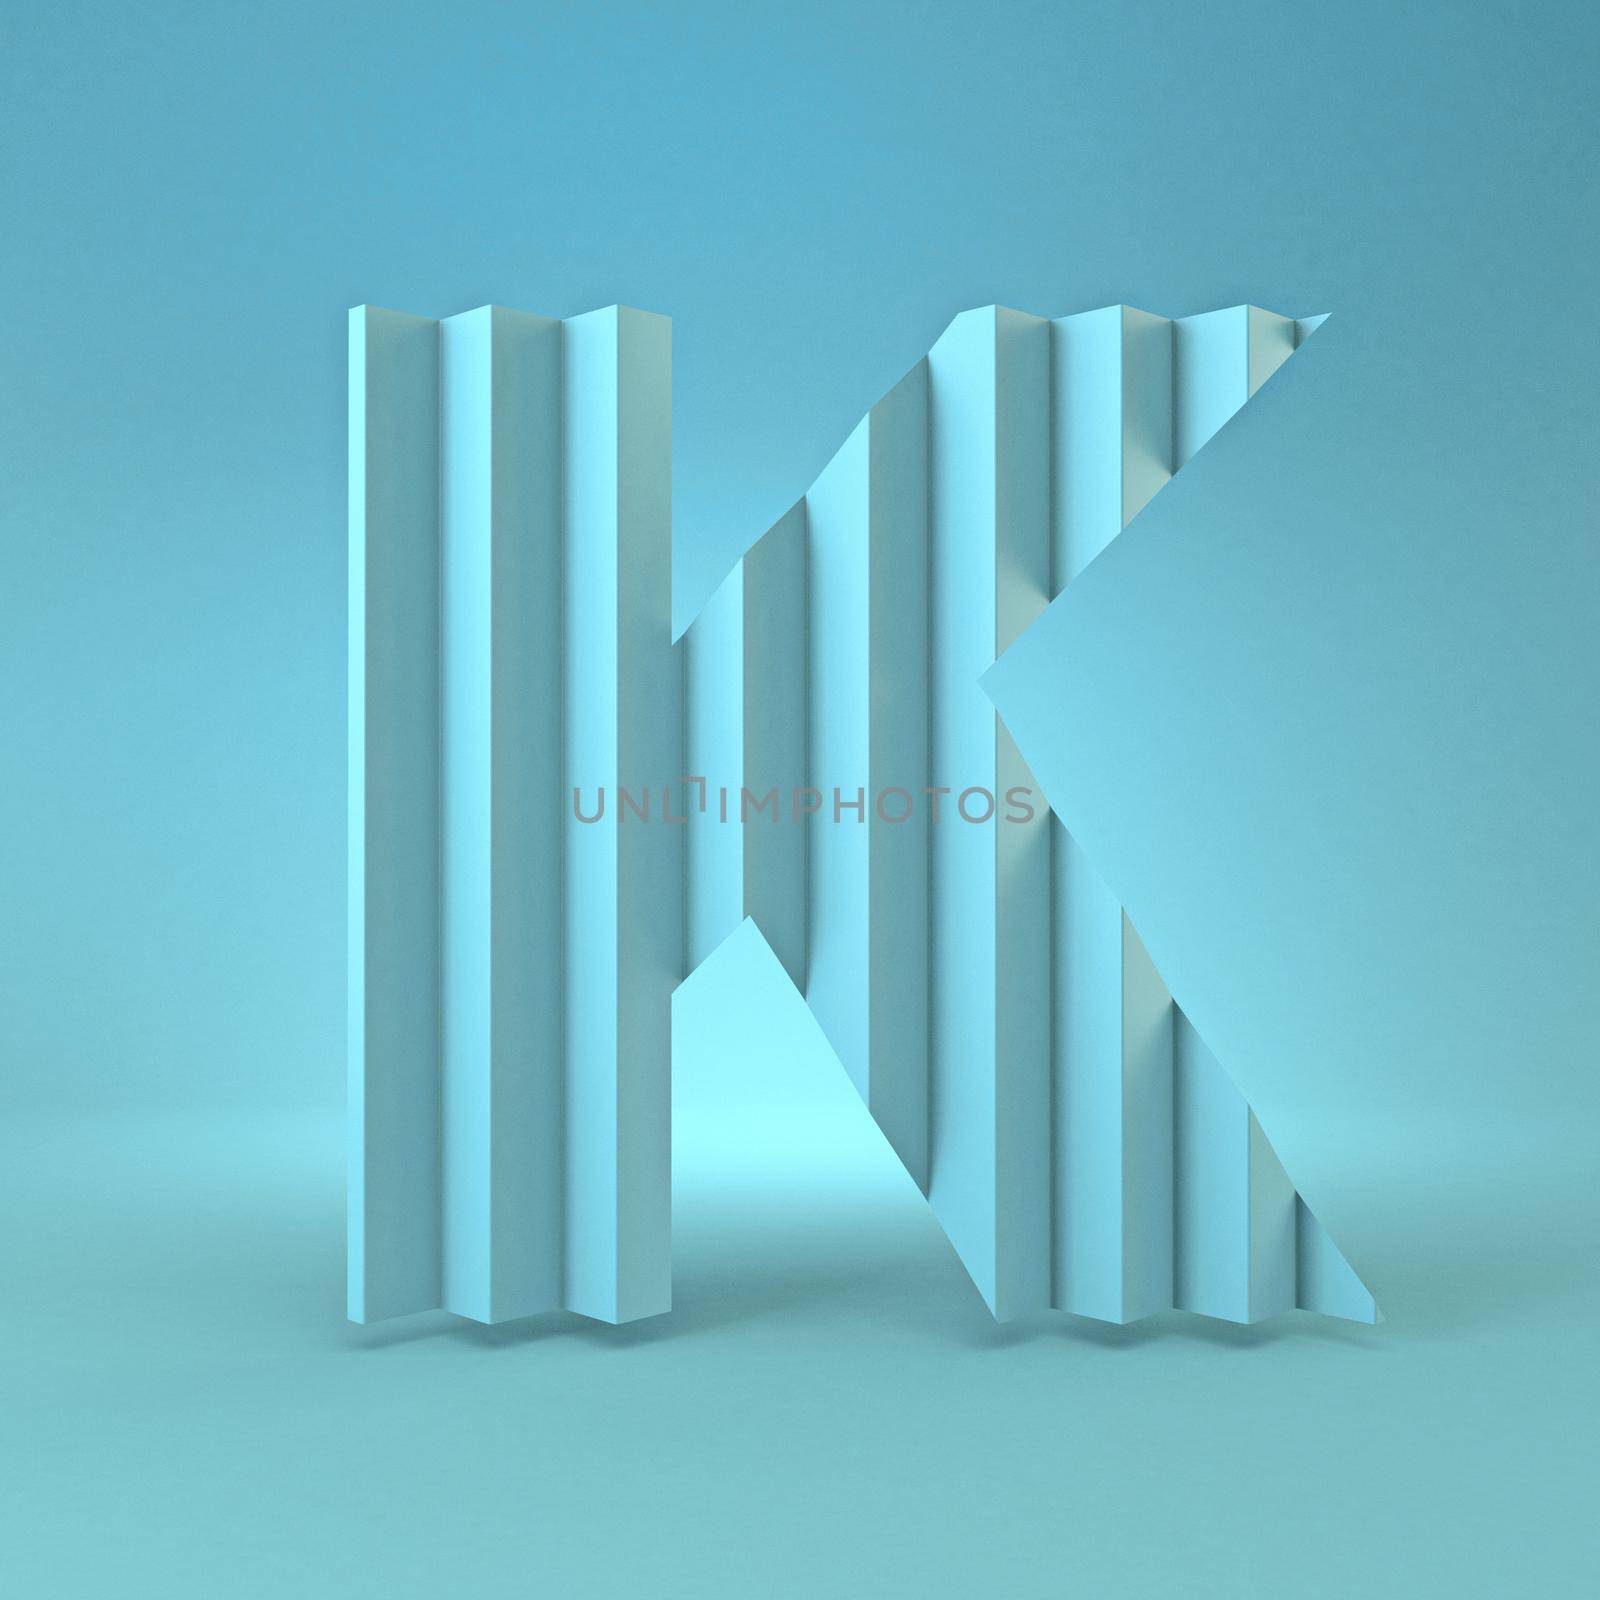 Cold blue font Letter K 3D render illustration on blue background